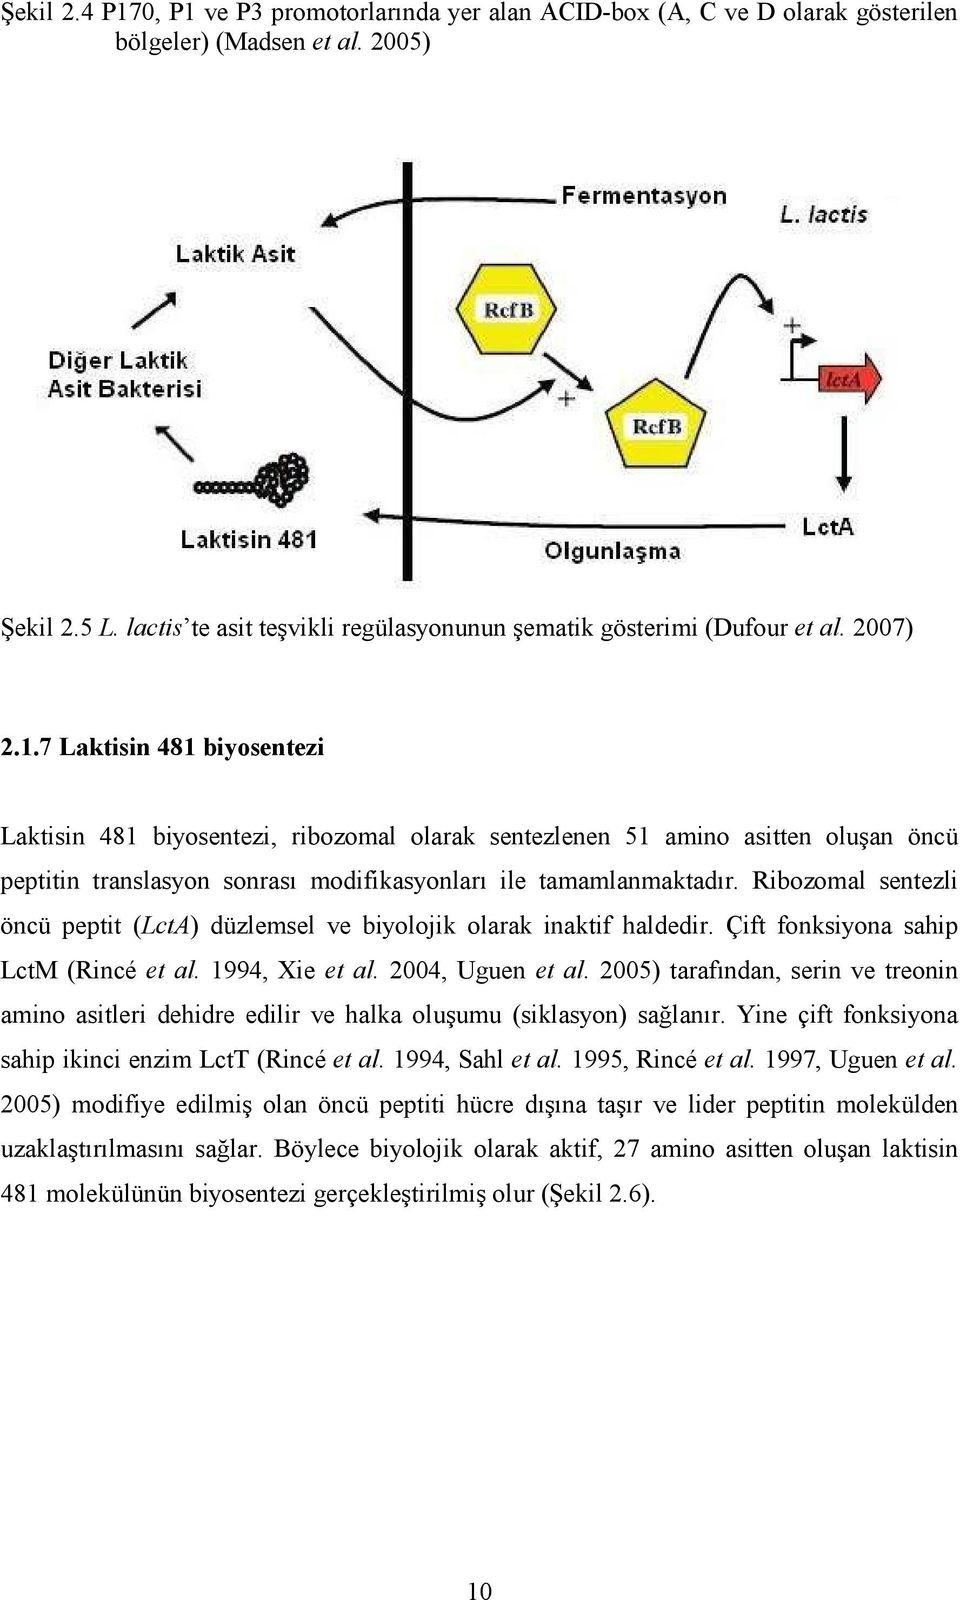 7 Laktisin 481 biyosentezi Laktisin 481 biyosentezi, ribozomal olarak sentezlenen 51 amino asitten oluşan öncü peptitin translasyon sonrası modifikasyonları ile tamamlanmaktadır.